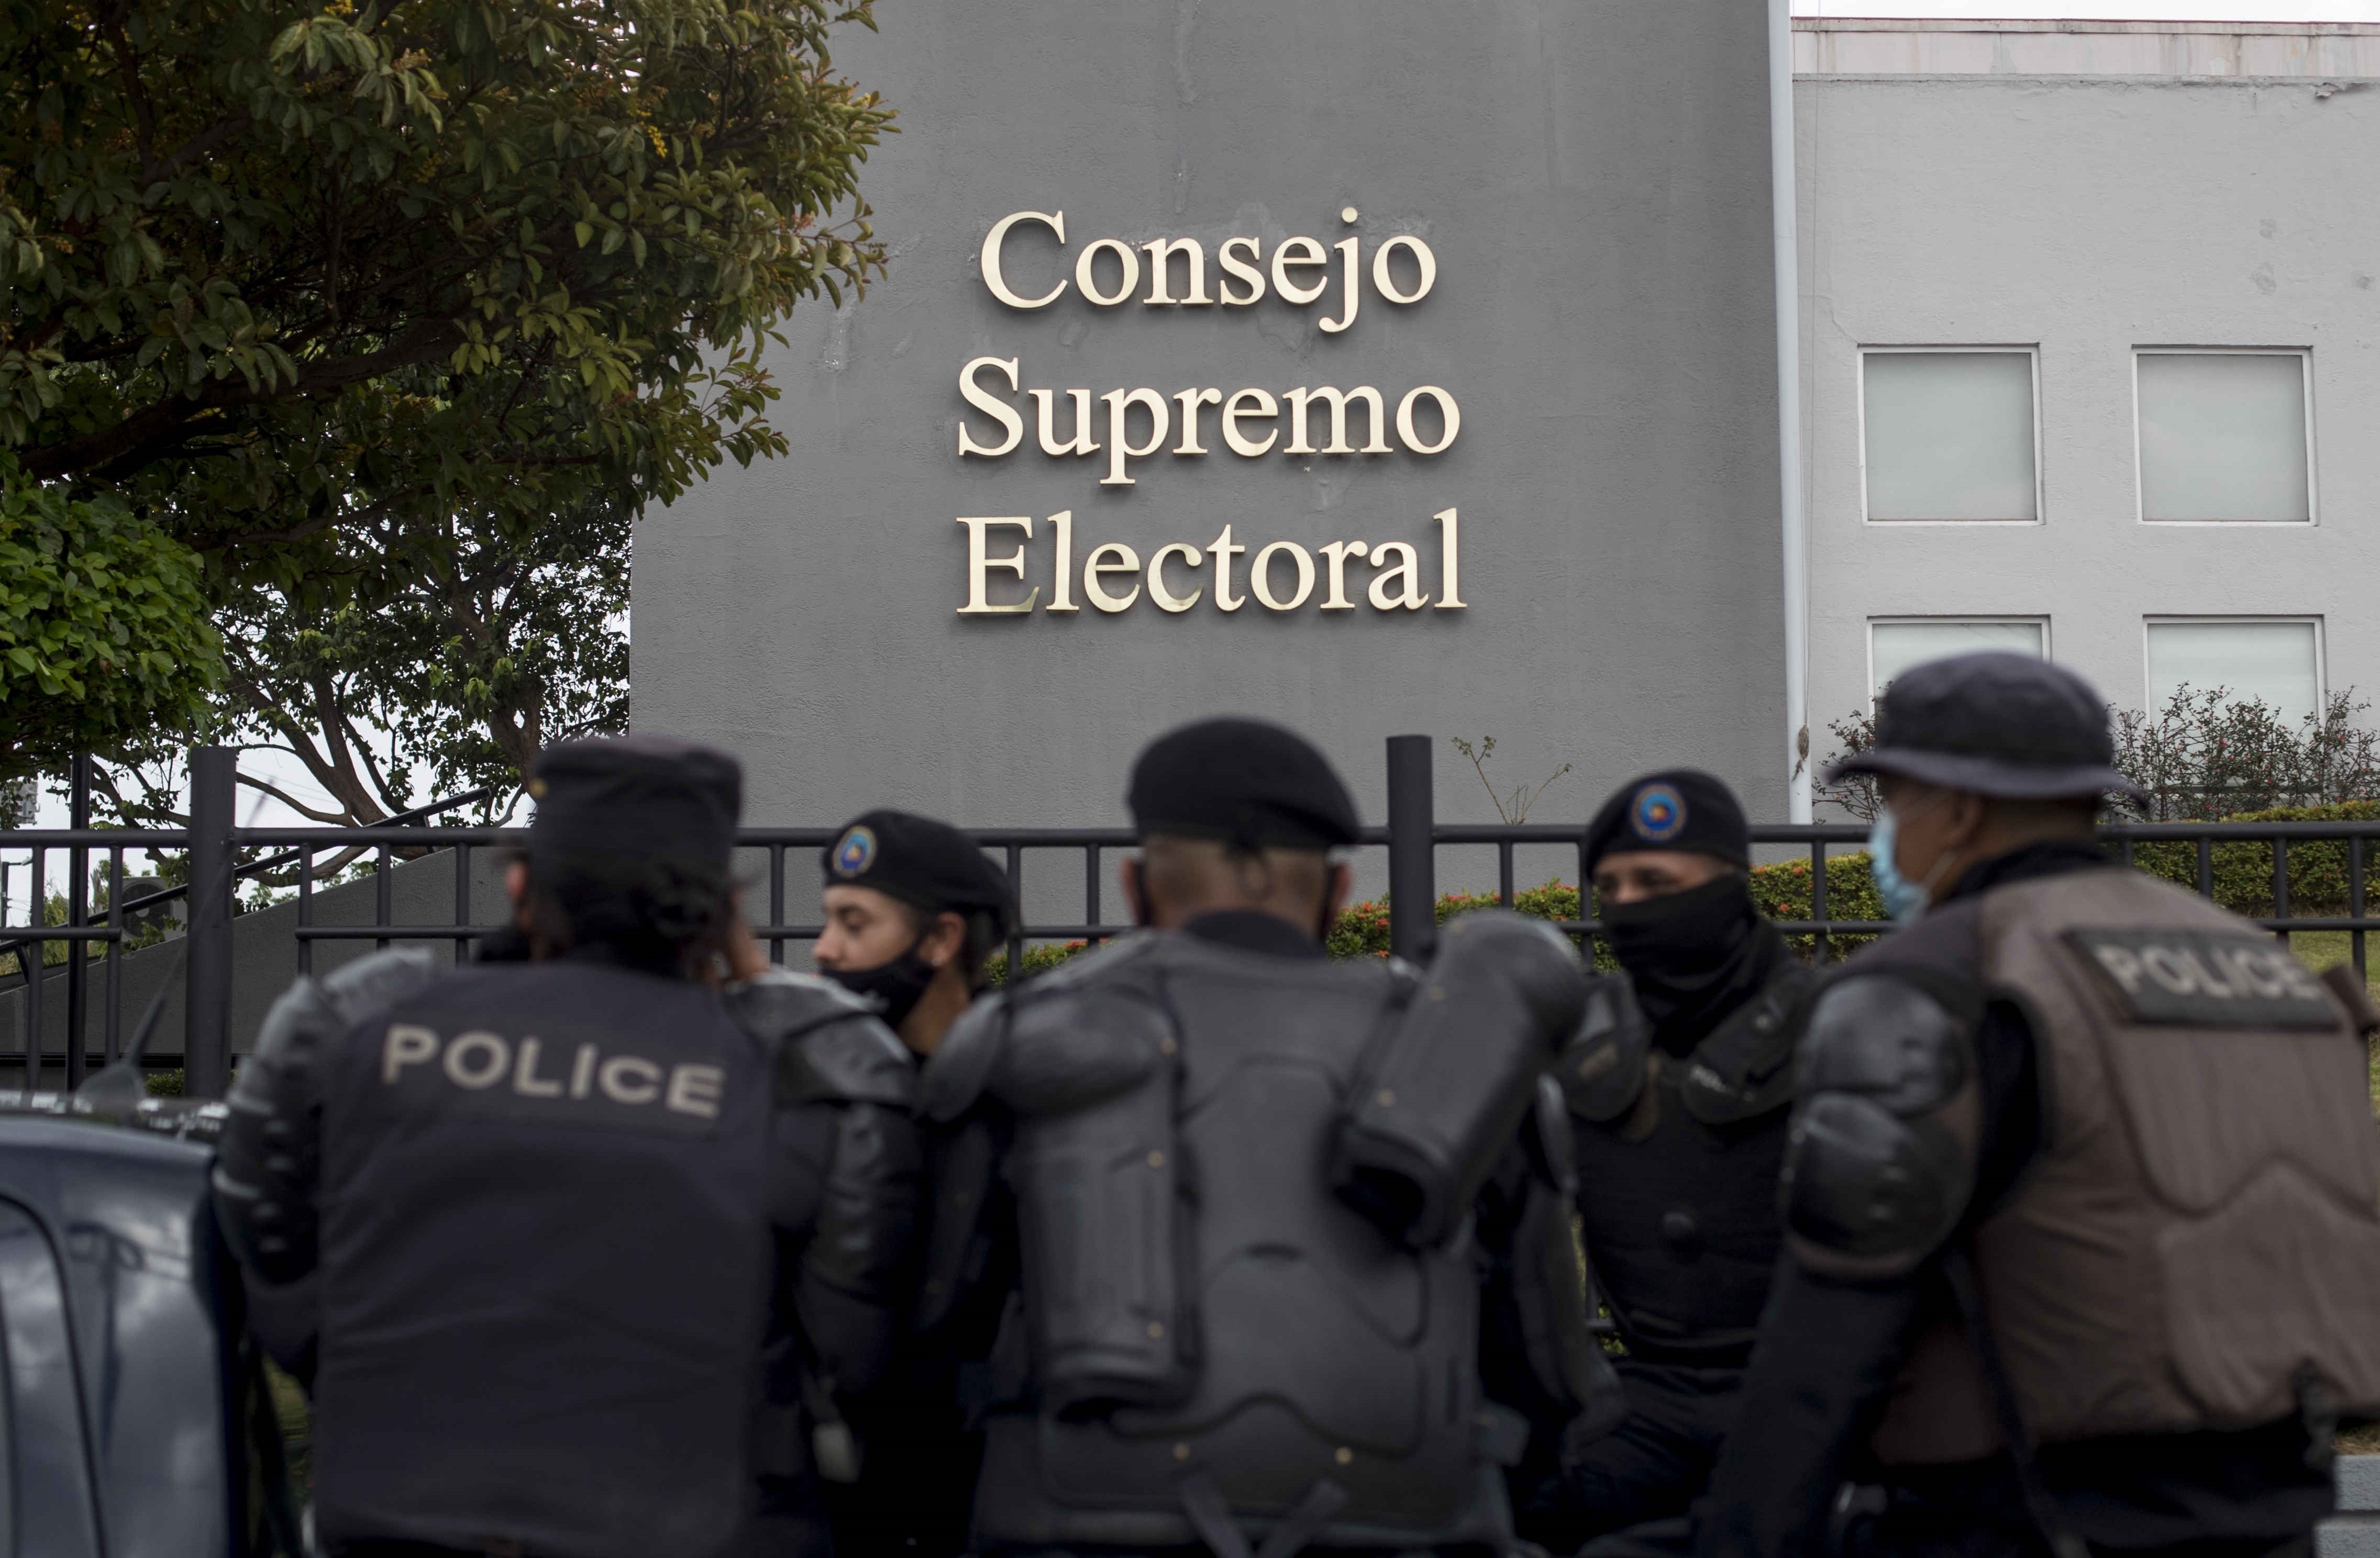 El Consejo Supremo Electoral de Nicaragua prohibió los eventos presenciales masivos en la campaña electoral (Foto: EFE)